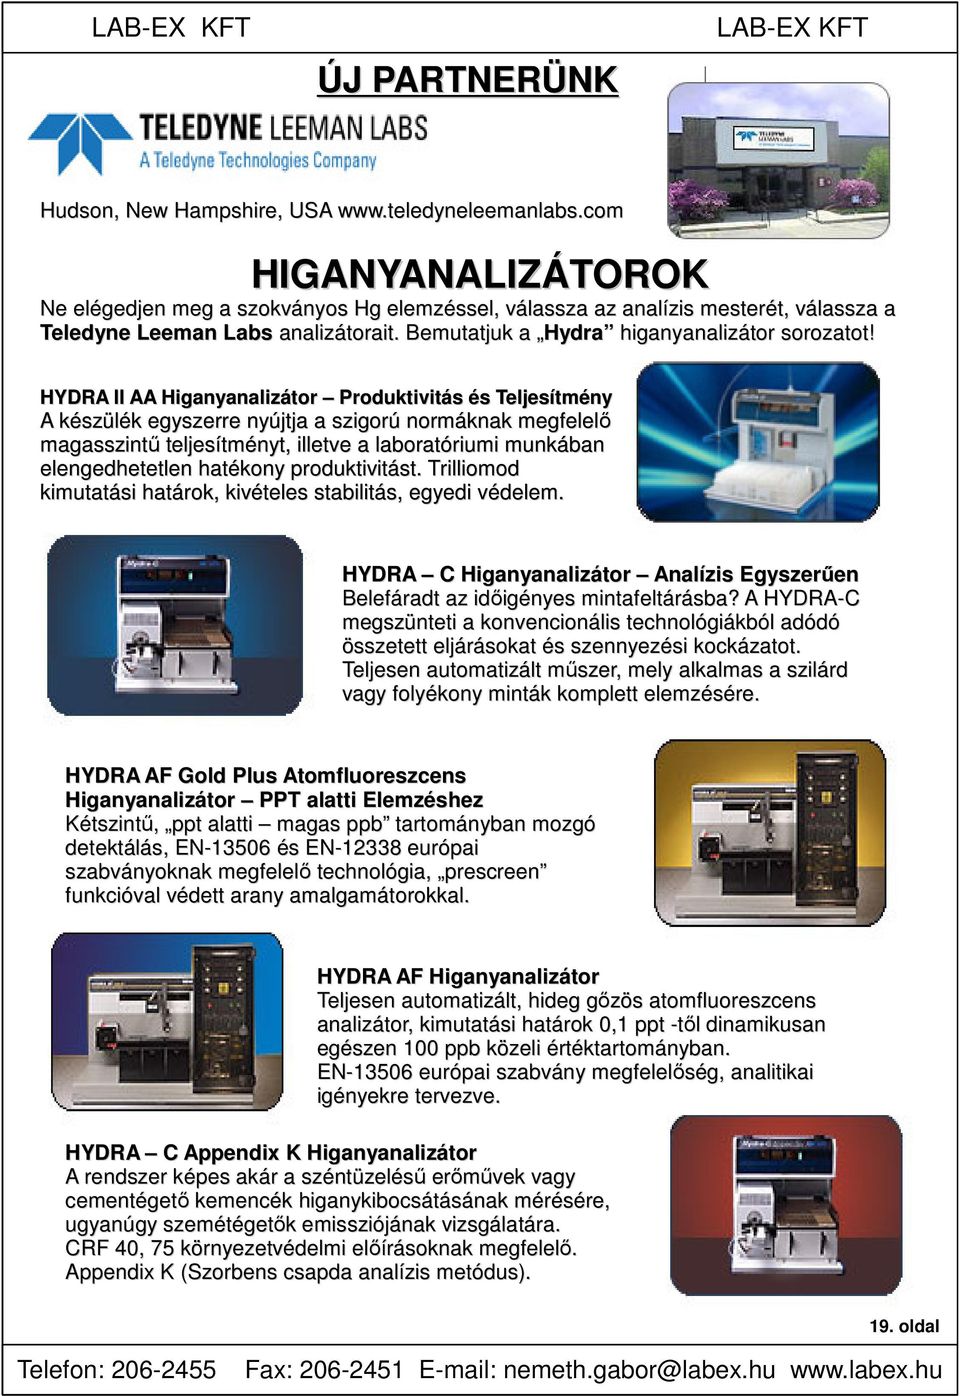 HYDRA II AA Higanyanalizátor Produktivitás és Teljesítmény A készülék egyszerre nyújtja a szigorú normáknak megfelelő magasszintű teljesítményt, illetve a laboratóriumi munkában elengedhetetlen